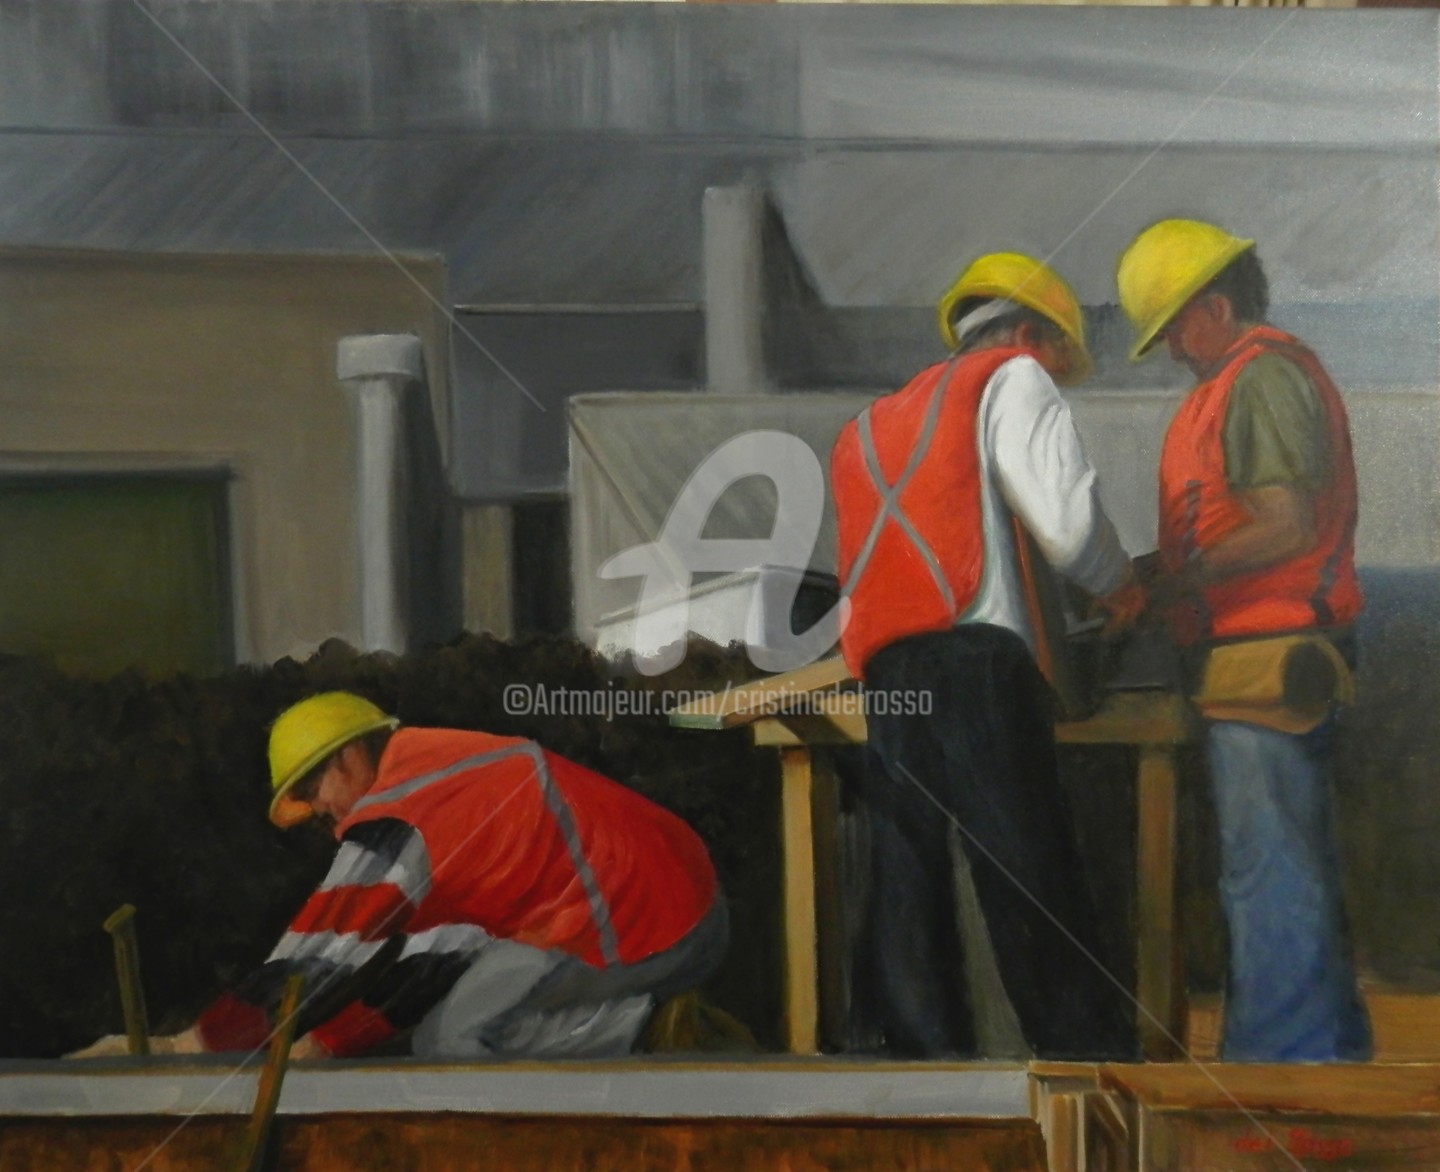 Cristina Del Rosso - Obra en construcción (Men at Work!)